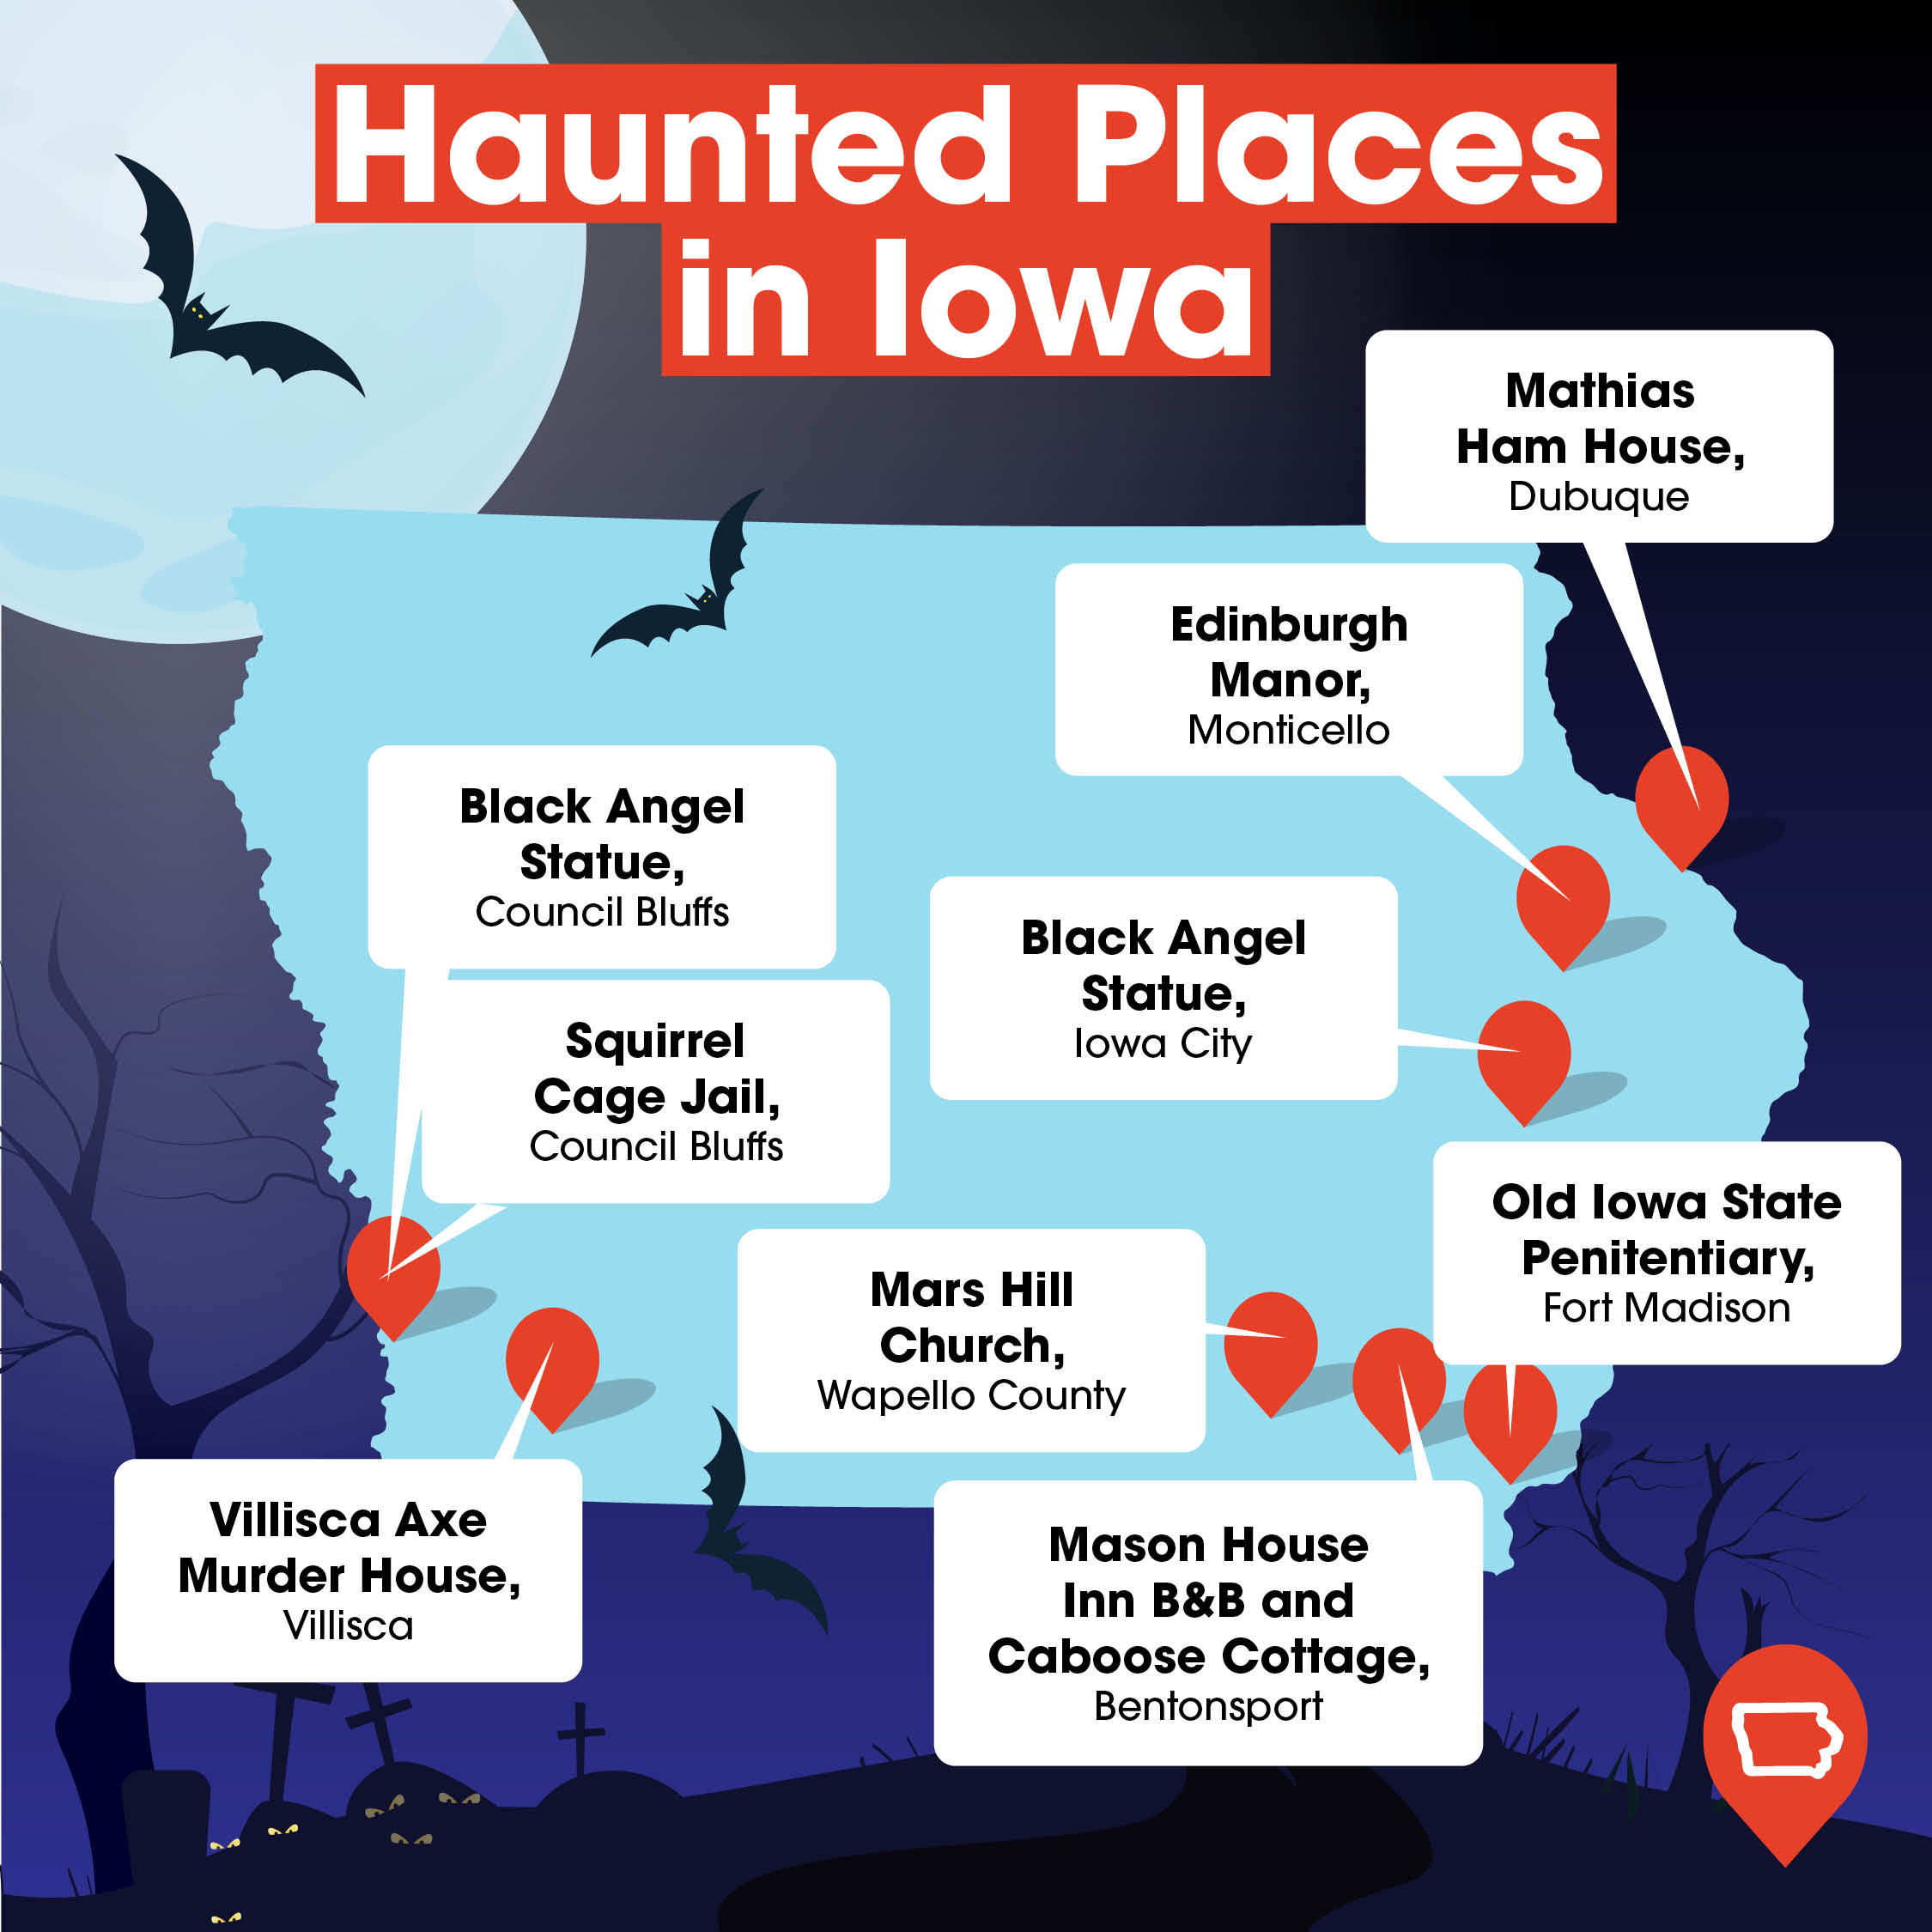 101921_HauntedPlacesMap_Iowa